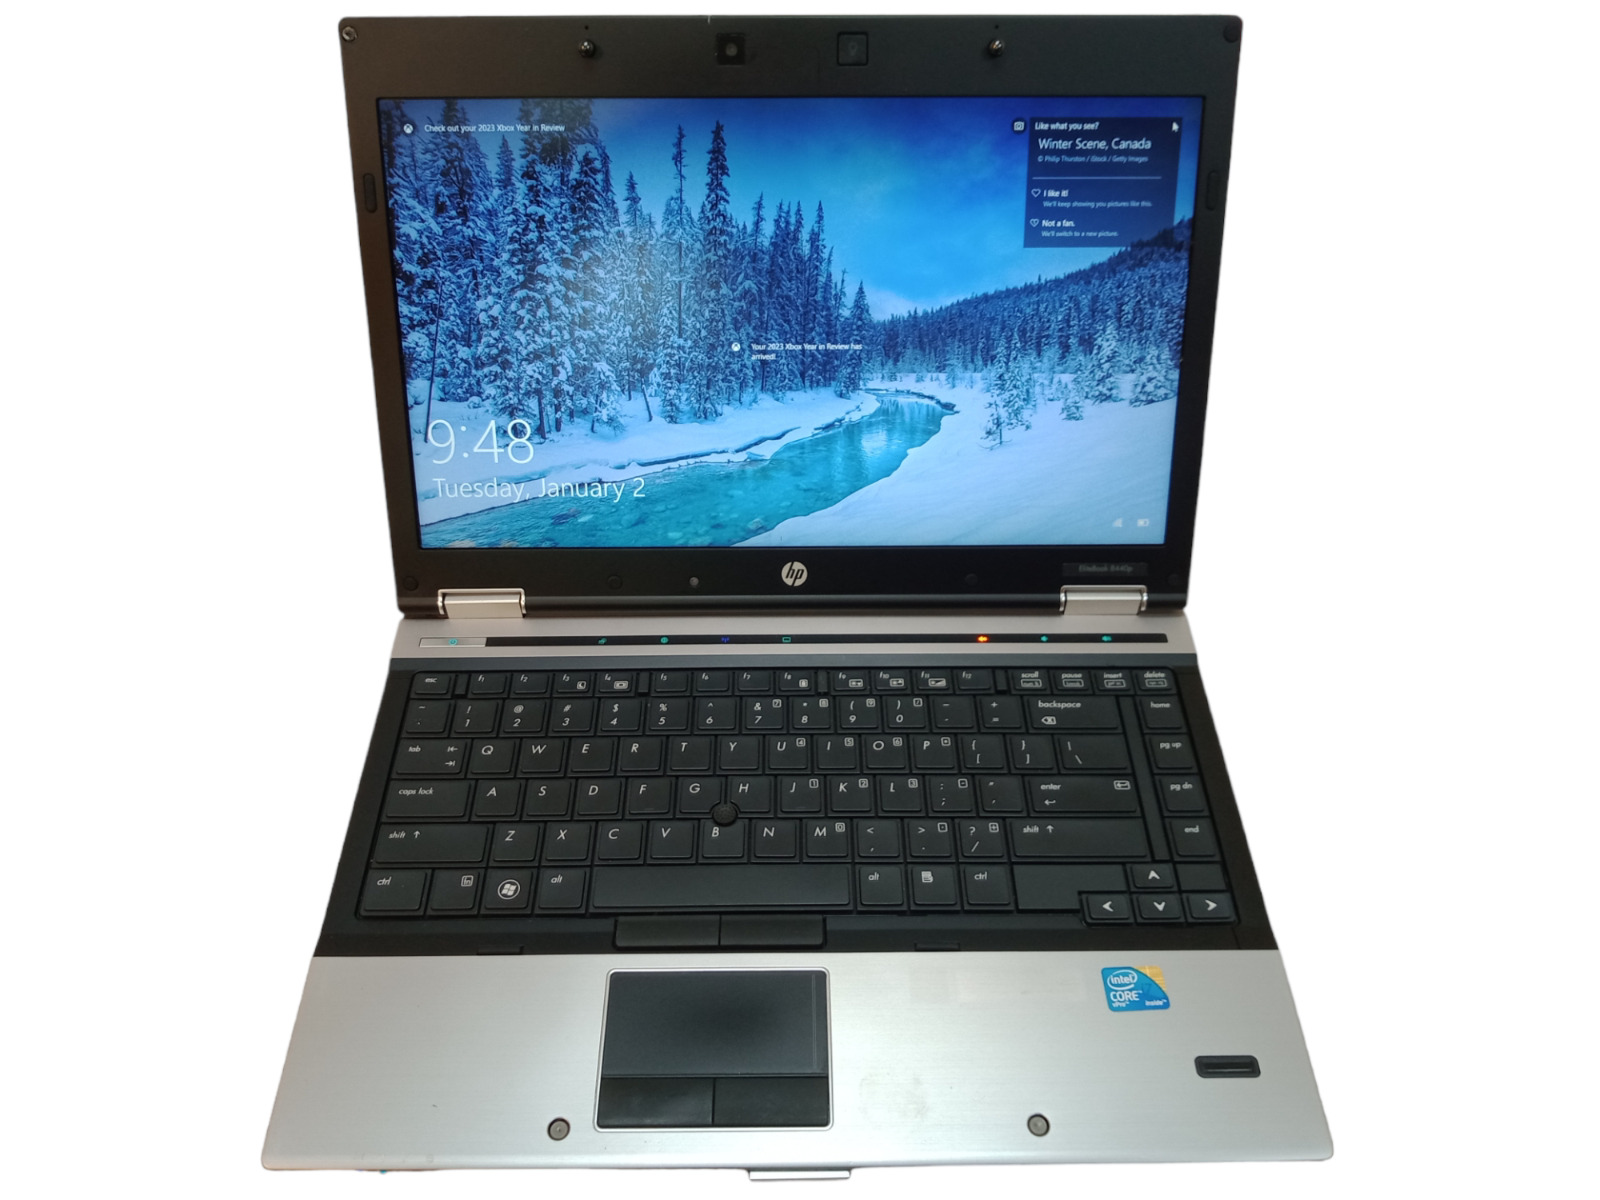 HP Elitebook 8440p i7-620m 2.67GHz 128GB SSD 8GB RAM NVS 3100m Win 10 Laptop